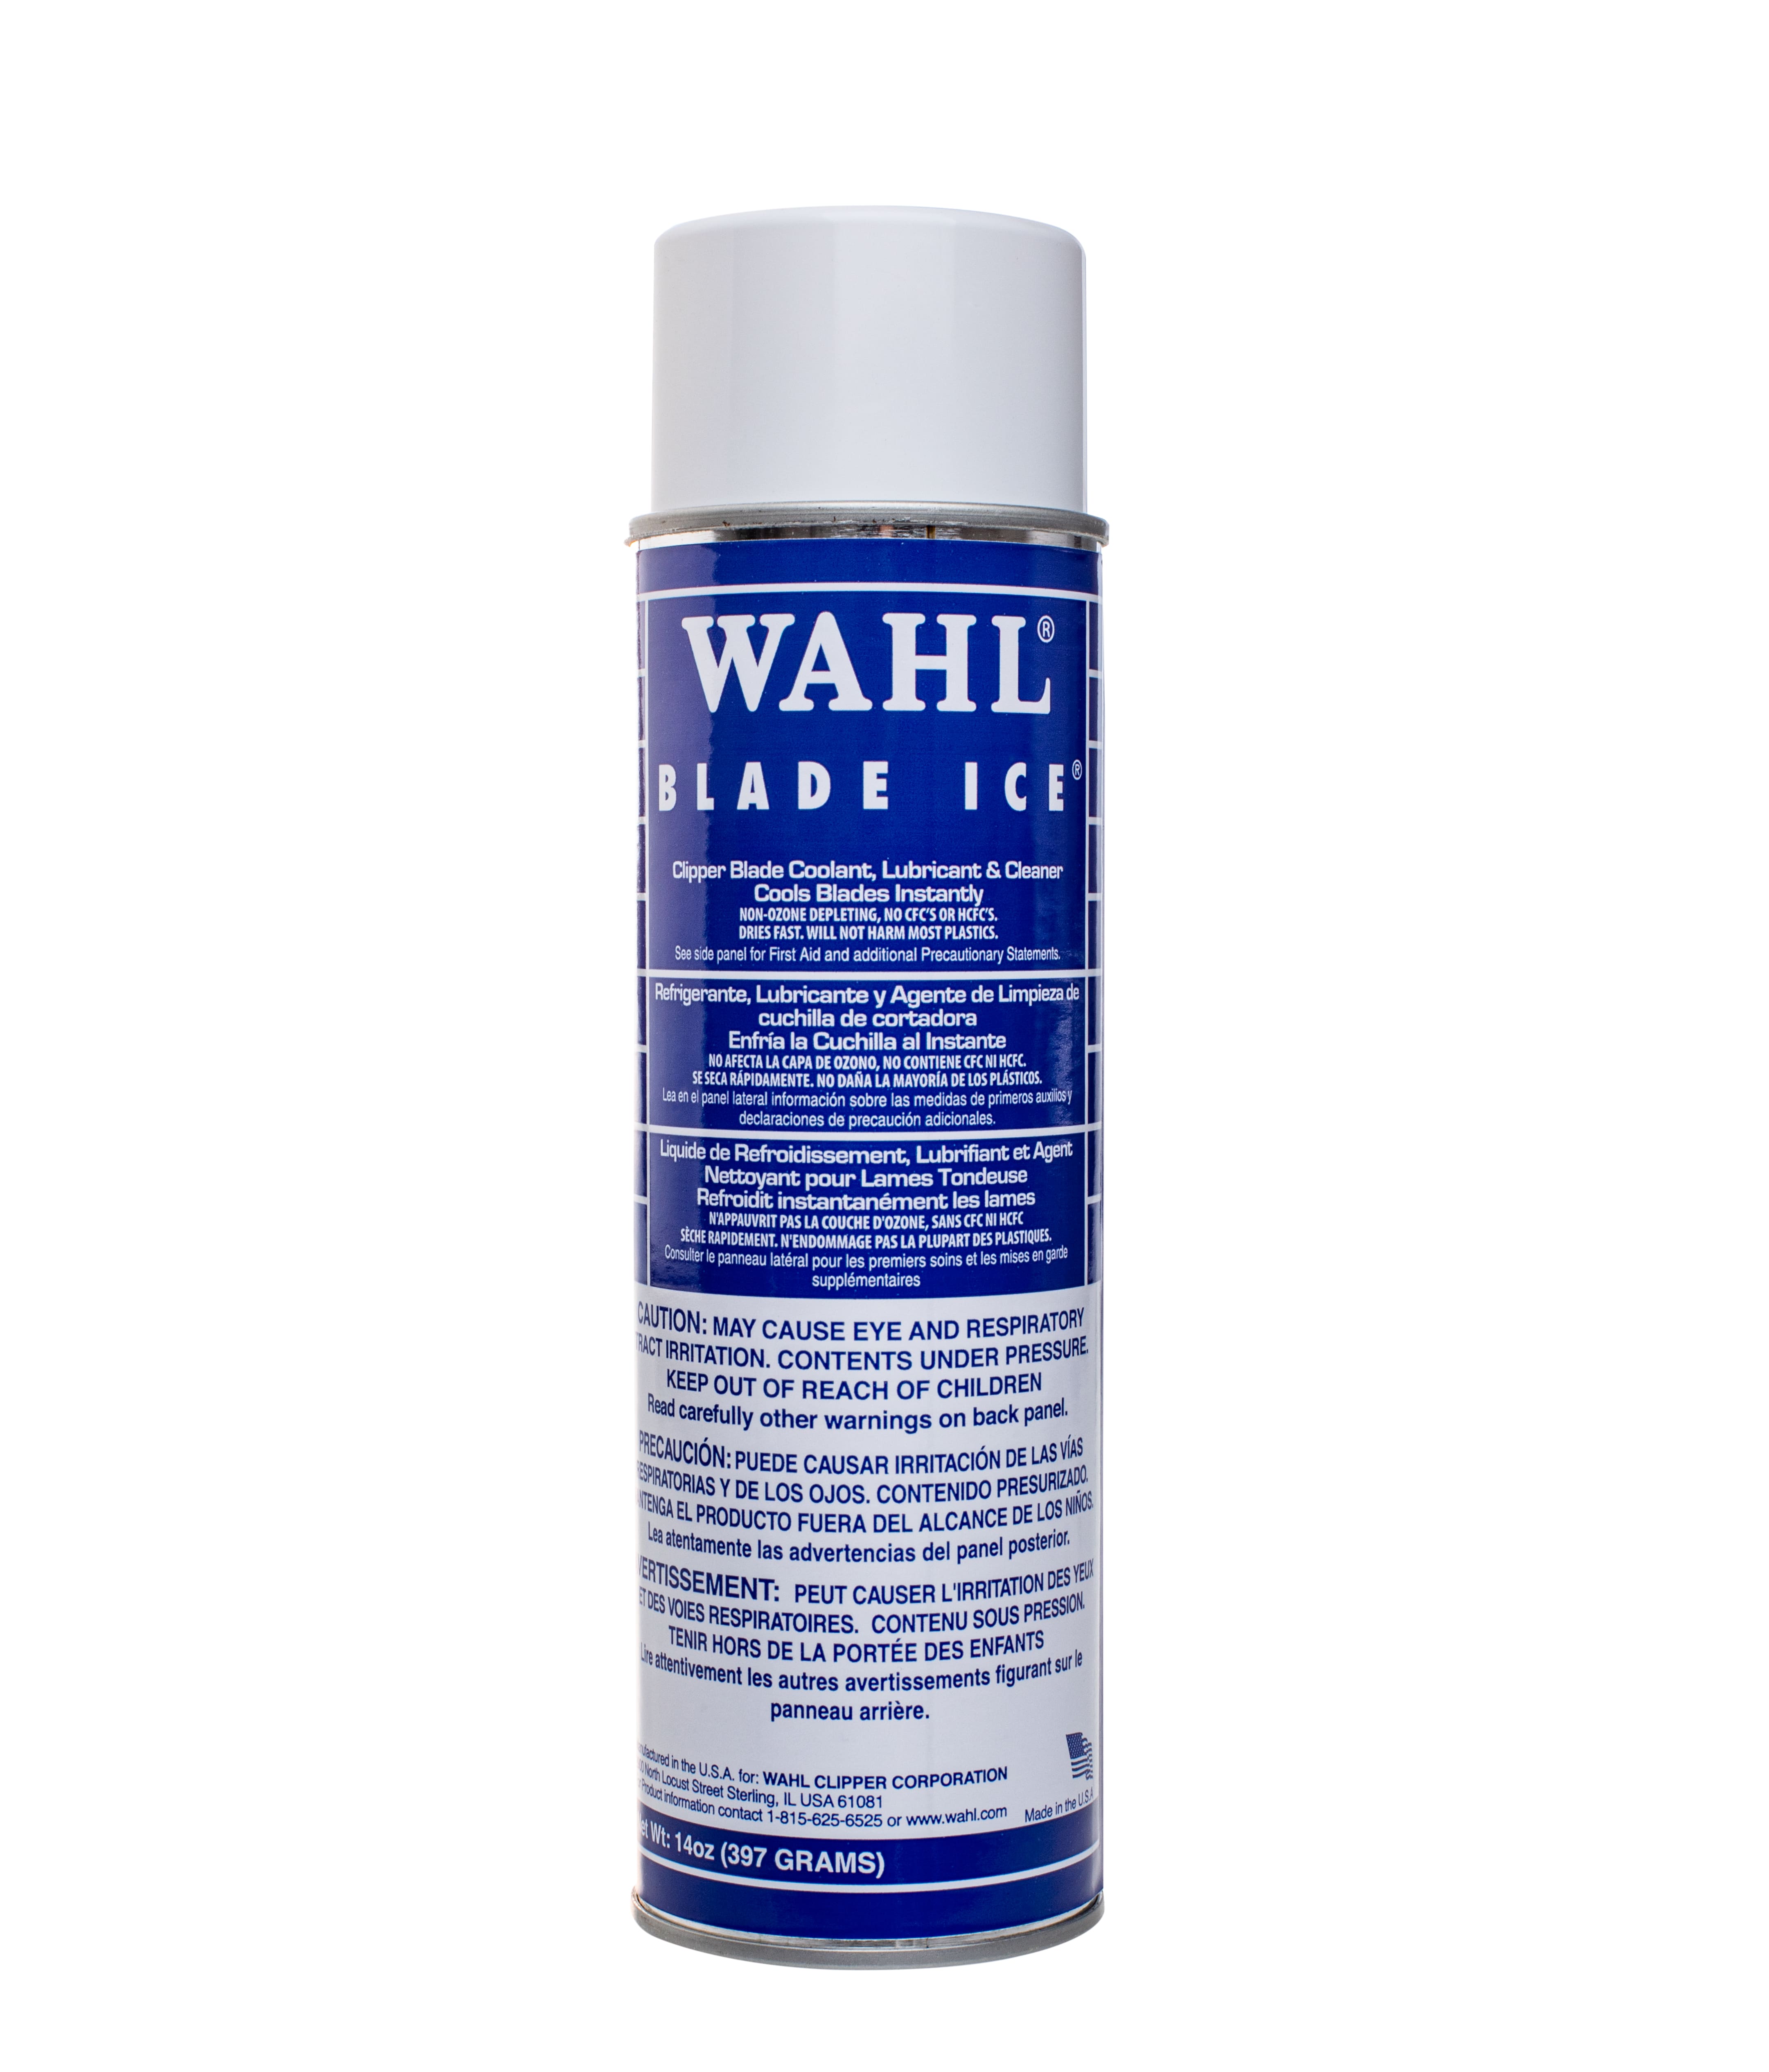 Cielo's_productos - ACEITE WAHL, ideal para el mantenimiento de máquinas  cortadoras de cabello.